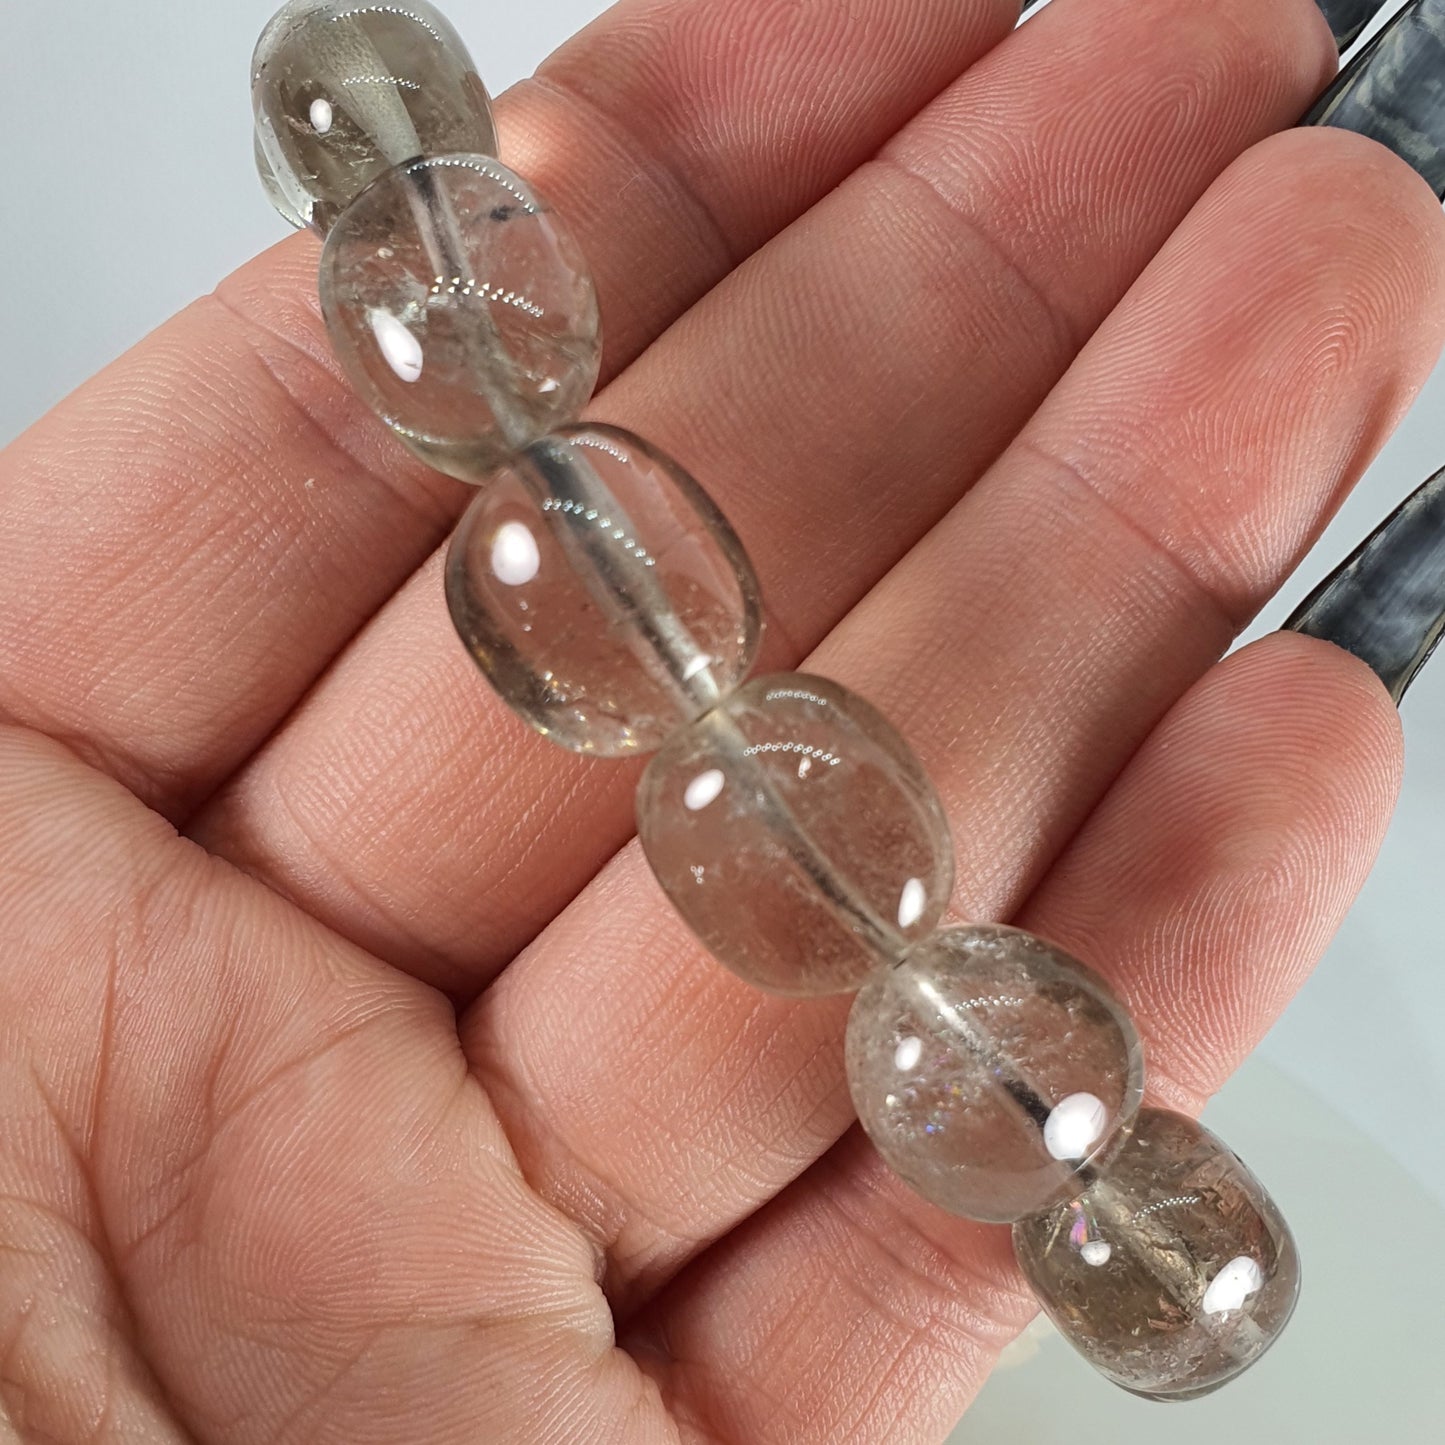 Crystals - Smoky Quartz Bracelet